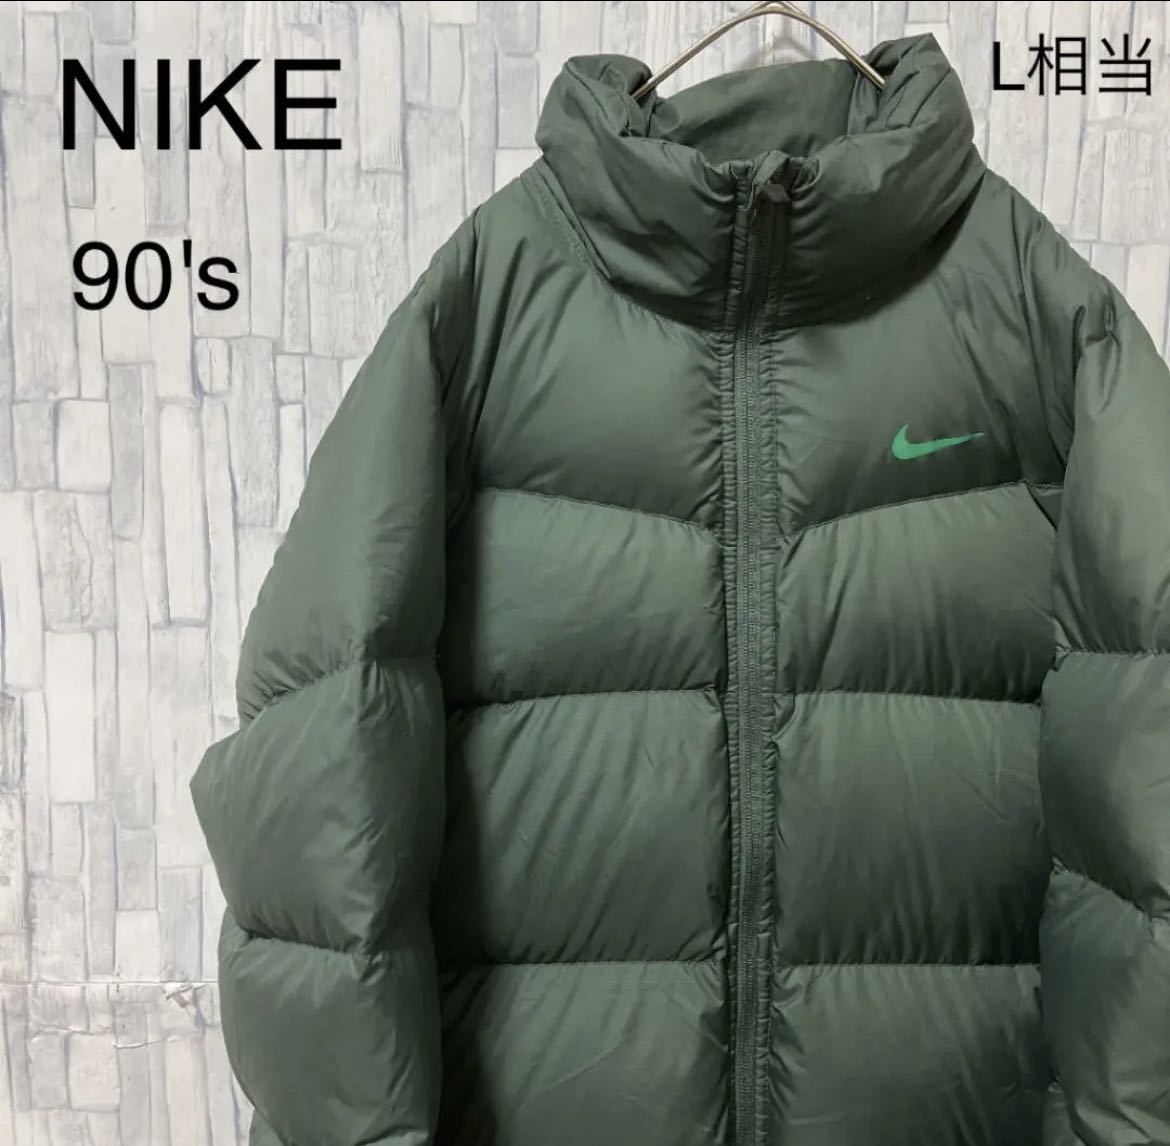 ソフトウェアプログラム 【最高カラー】90s NIKE ナイキ ダウンジャケット 緑 刺繍ロゴ ダウンジャケット